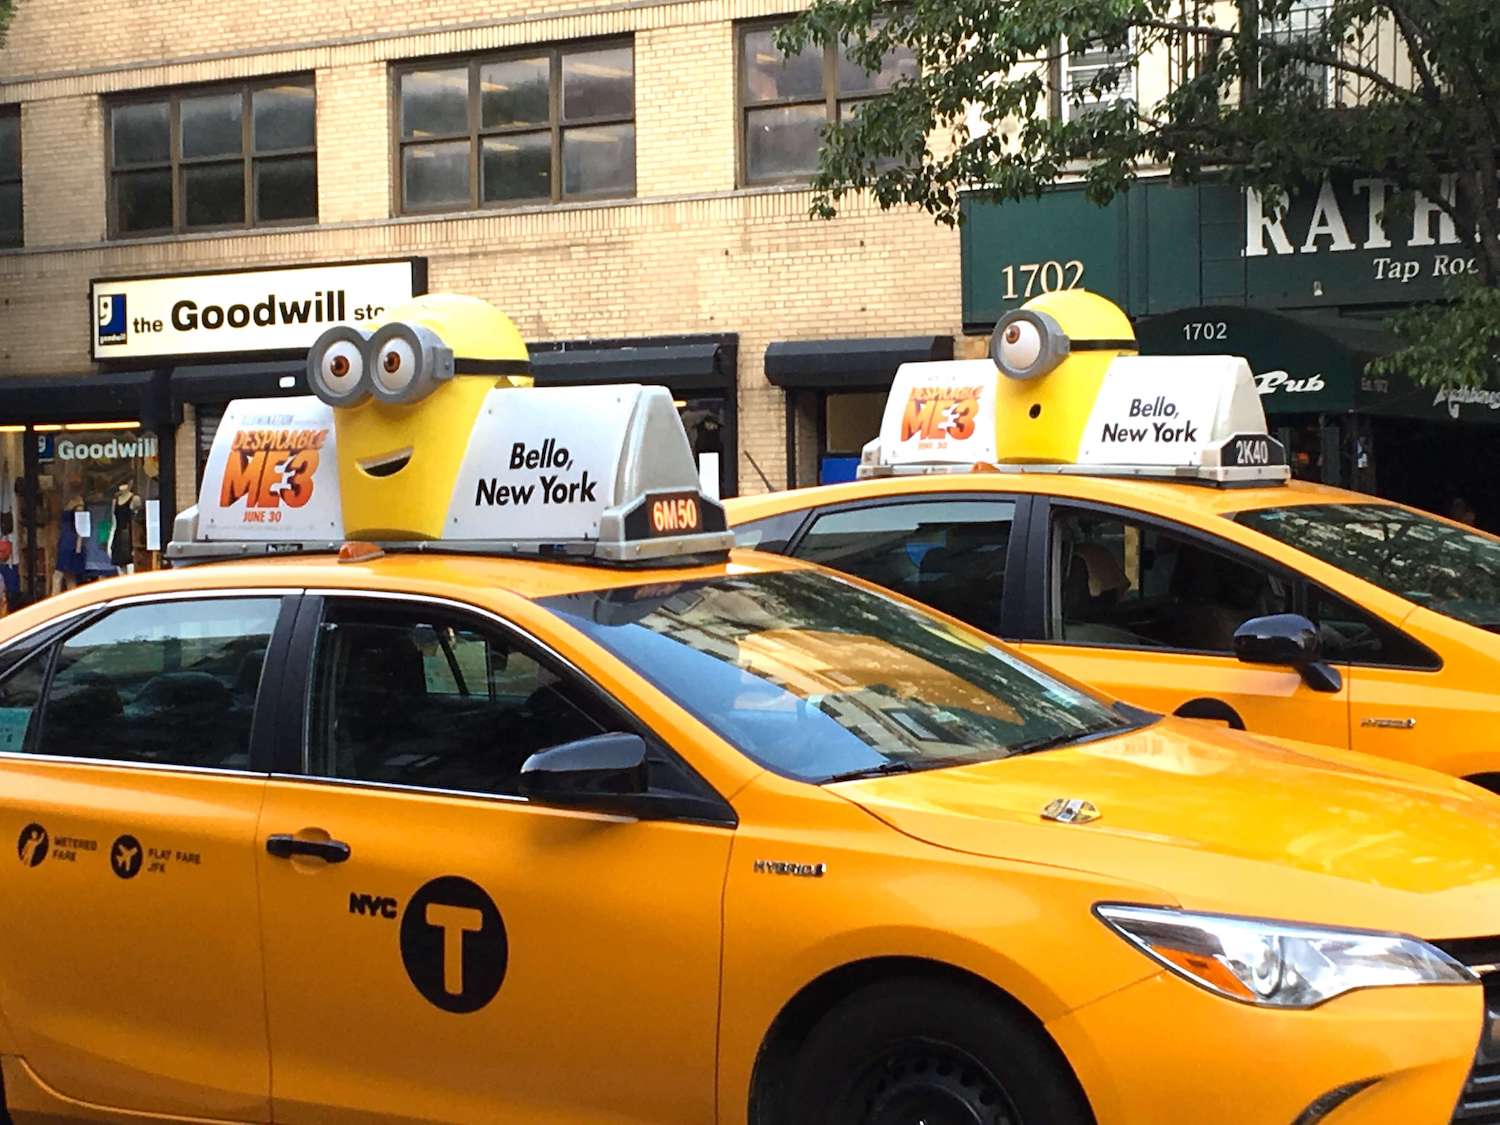 Chiến dịch quảng cáo taxi sáng tạo của Despicable Me